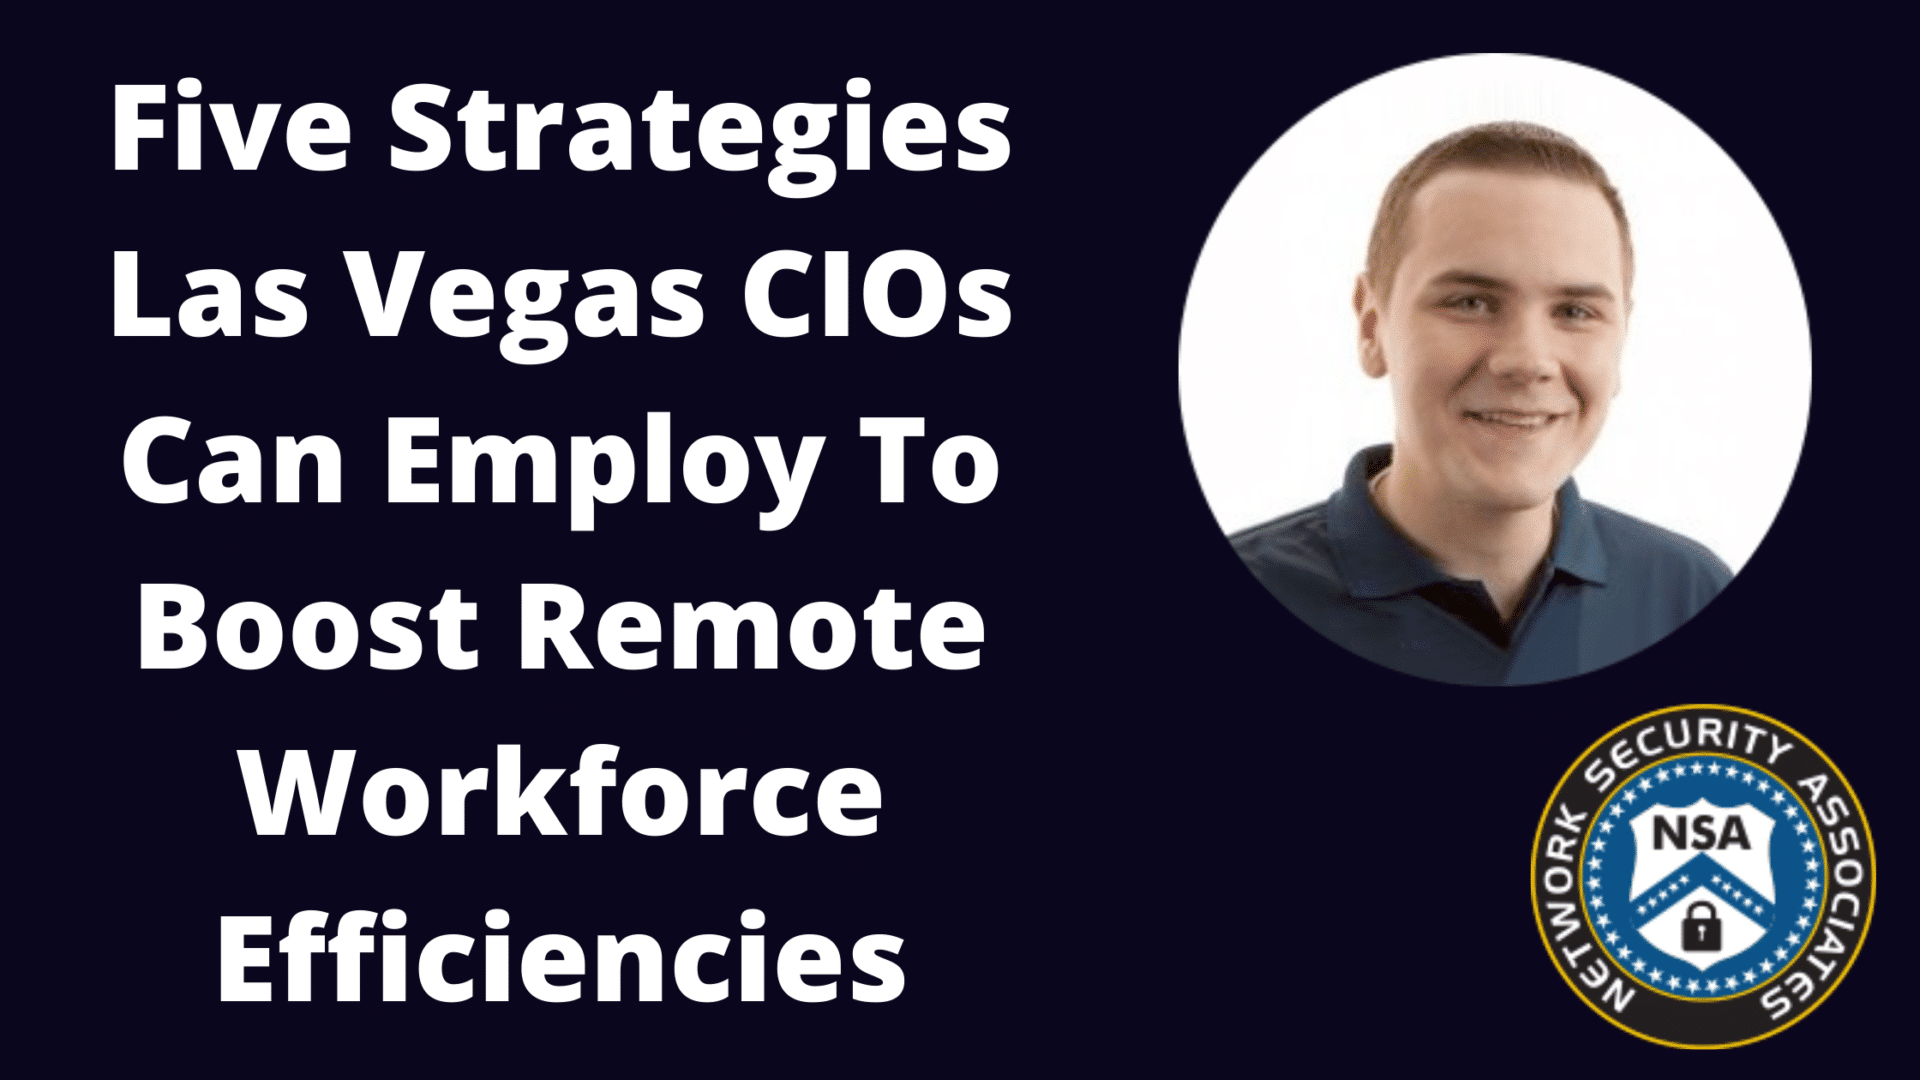 Five Strategies Las Vegas CIOs Can Employ To Boost Remote Workforce Efficiencies